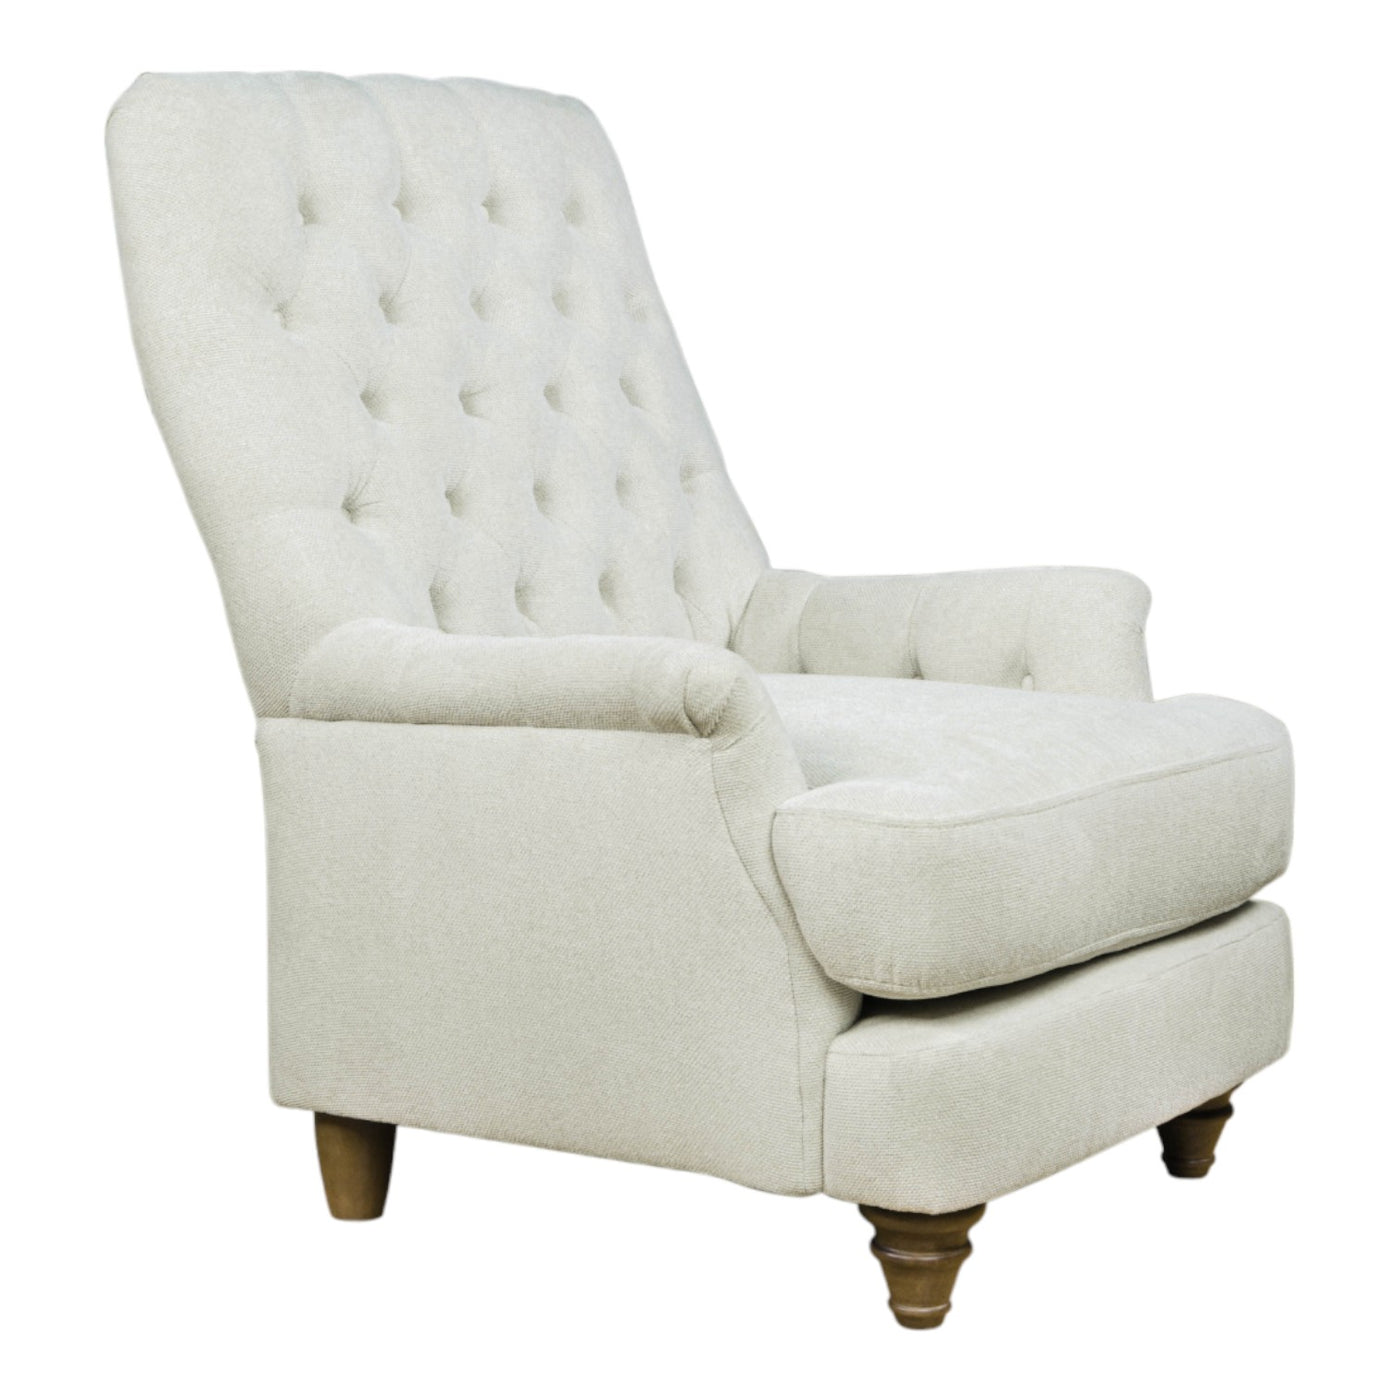 Buckingham Chair Beige - Future Classics Furniture